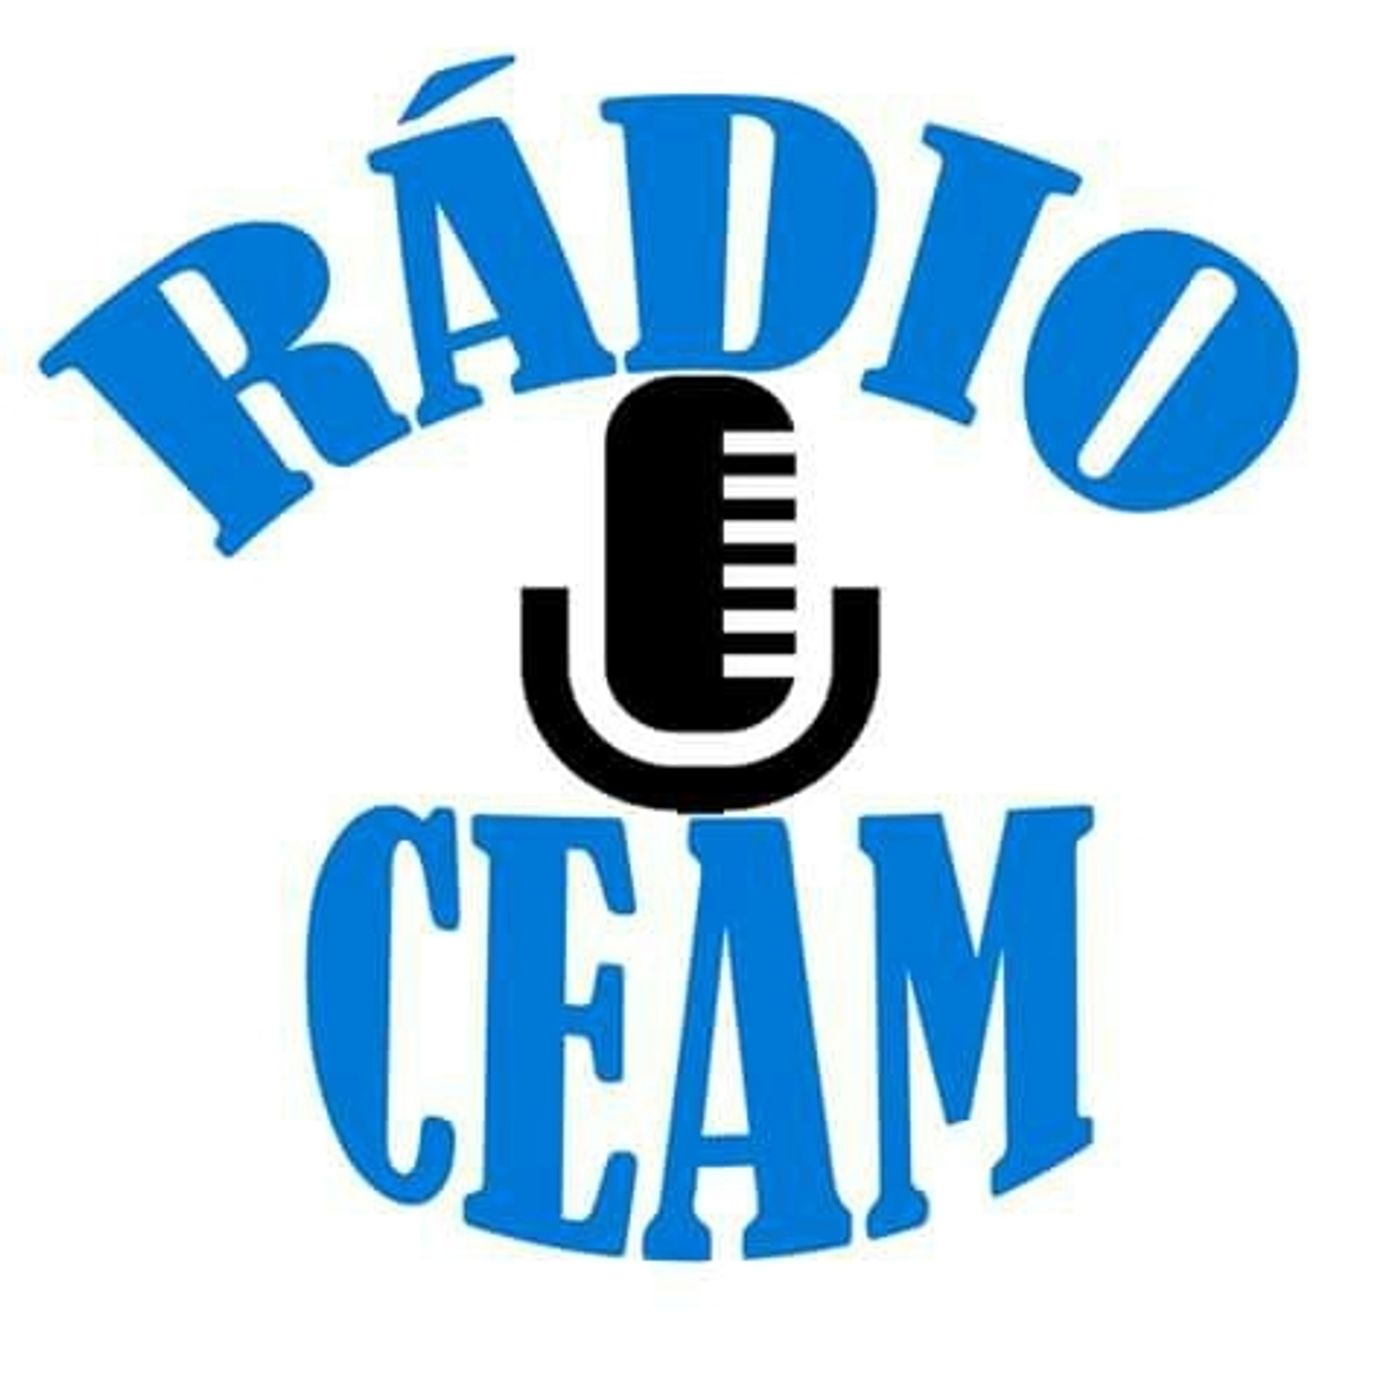 Radio Ceam